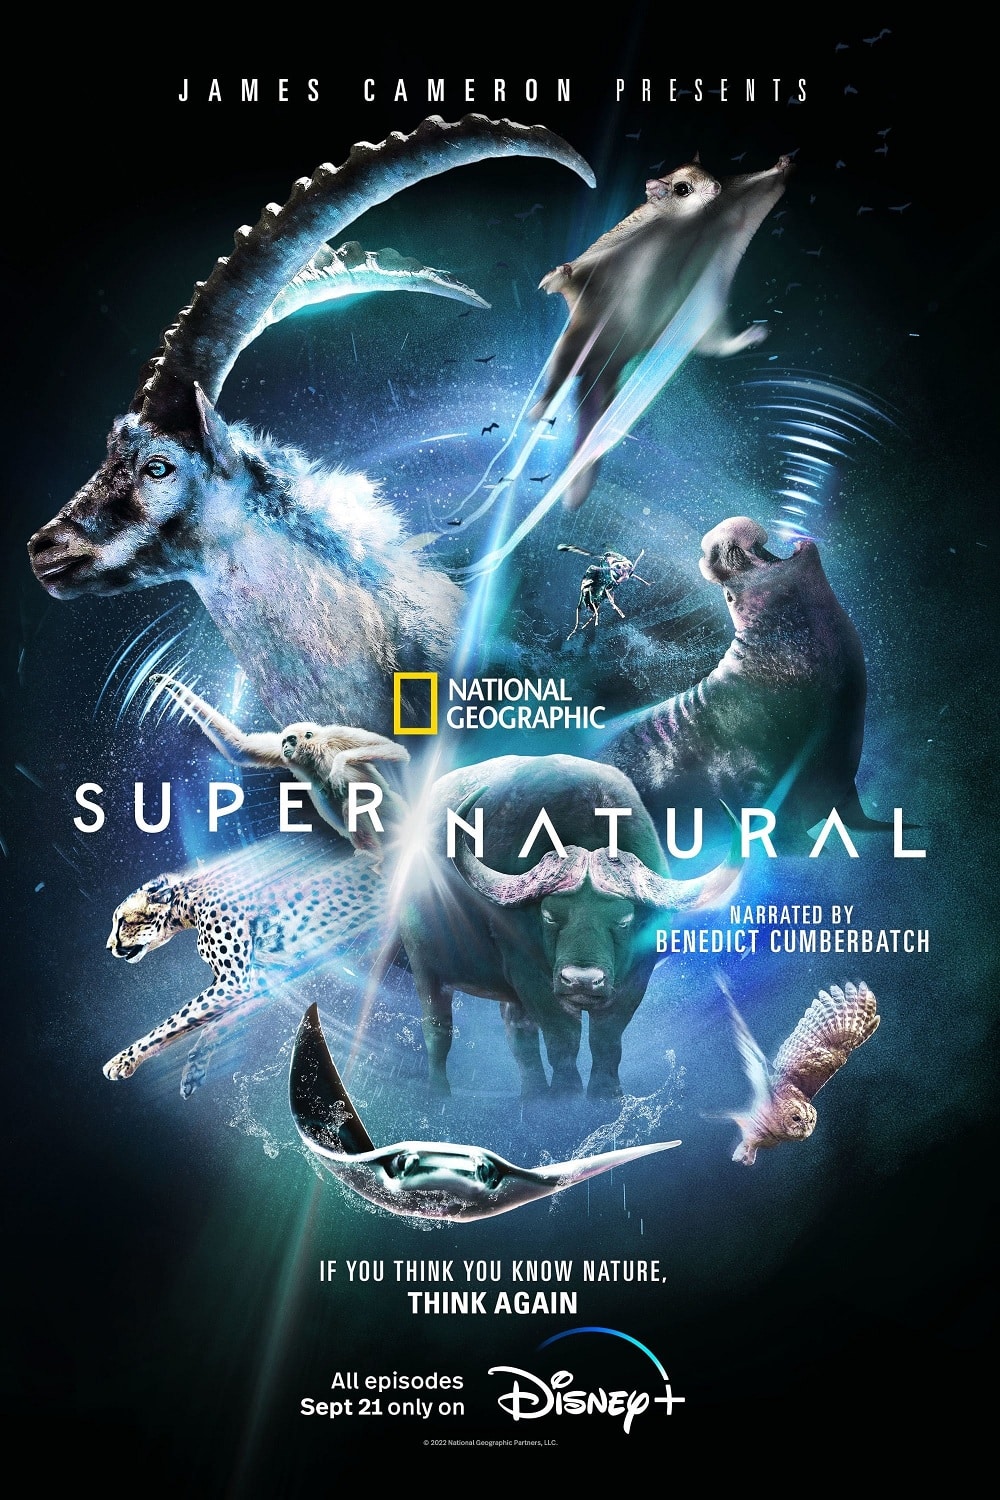 Super-Natural-Poster-Disney-Plus Conheça 'Super/Natural', nova série de James Cameron com Benedict Cumberbatch do Disney+